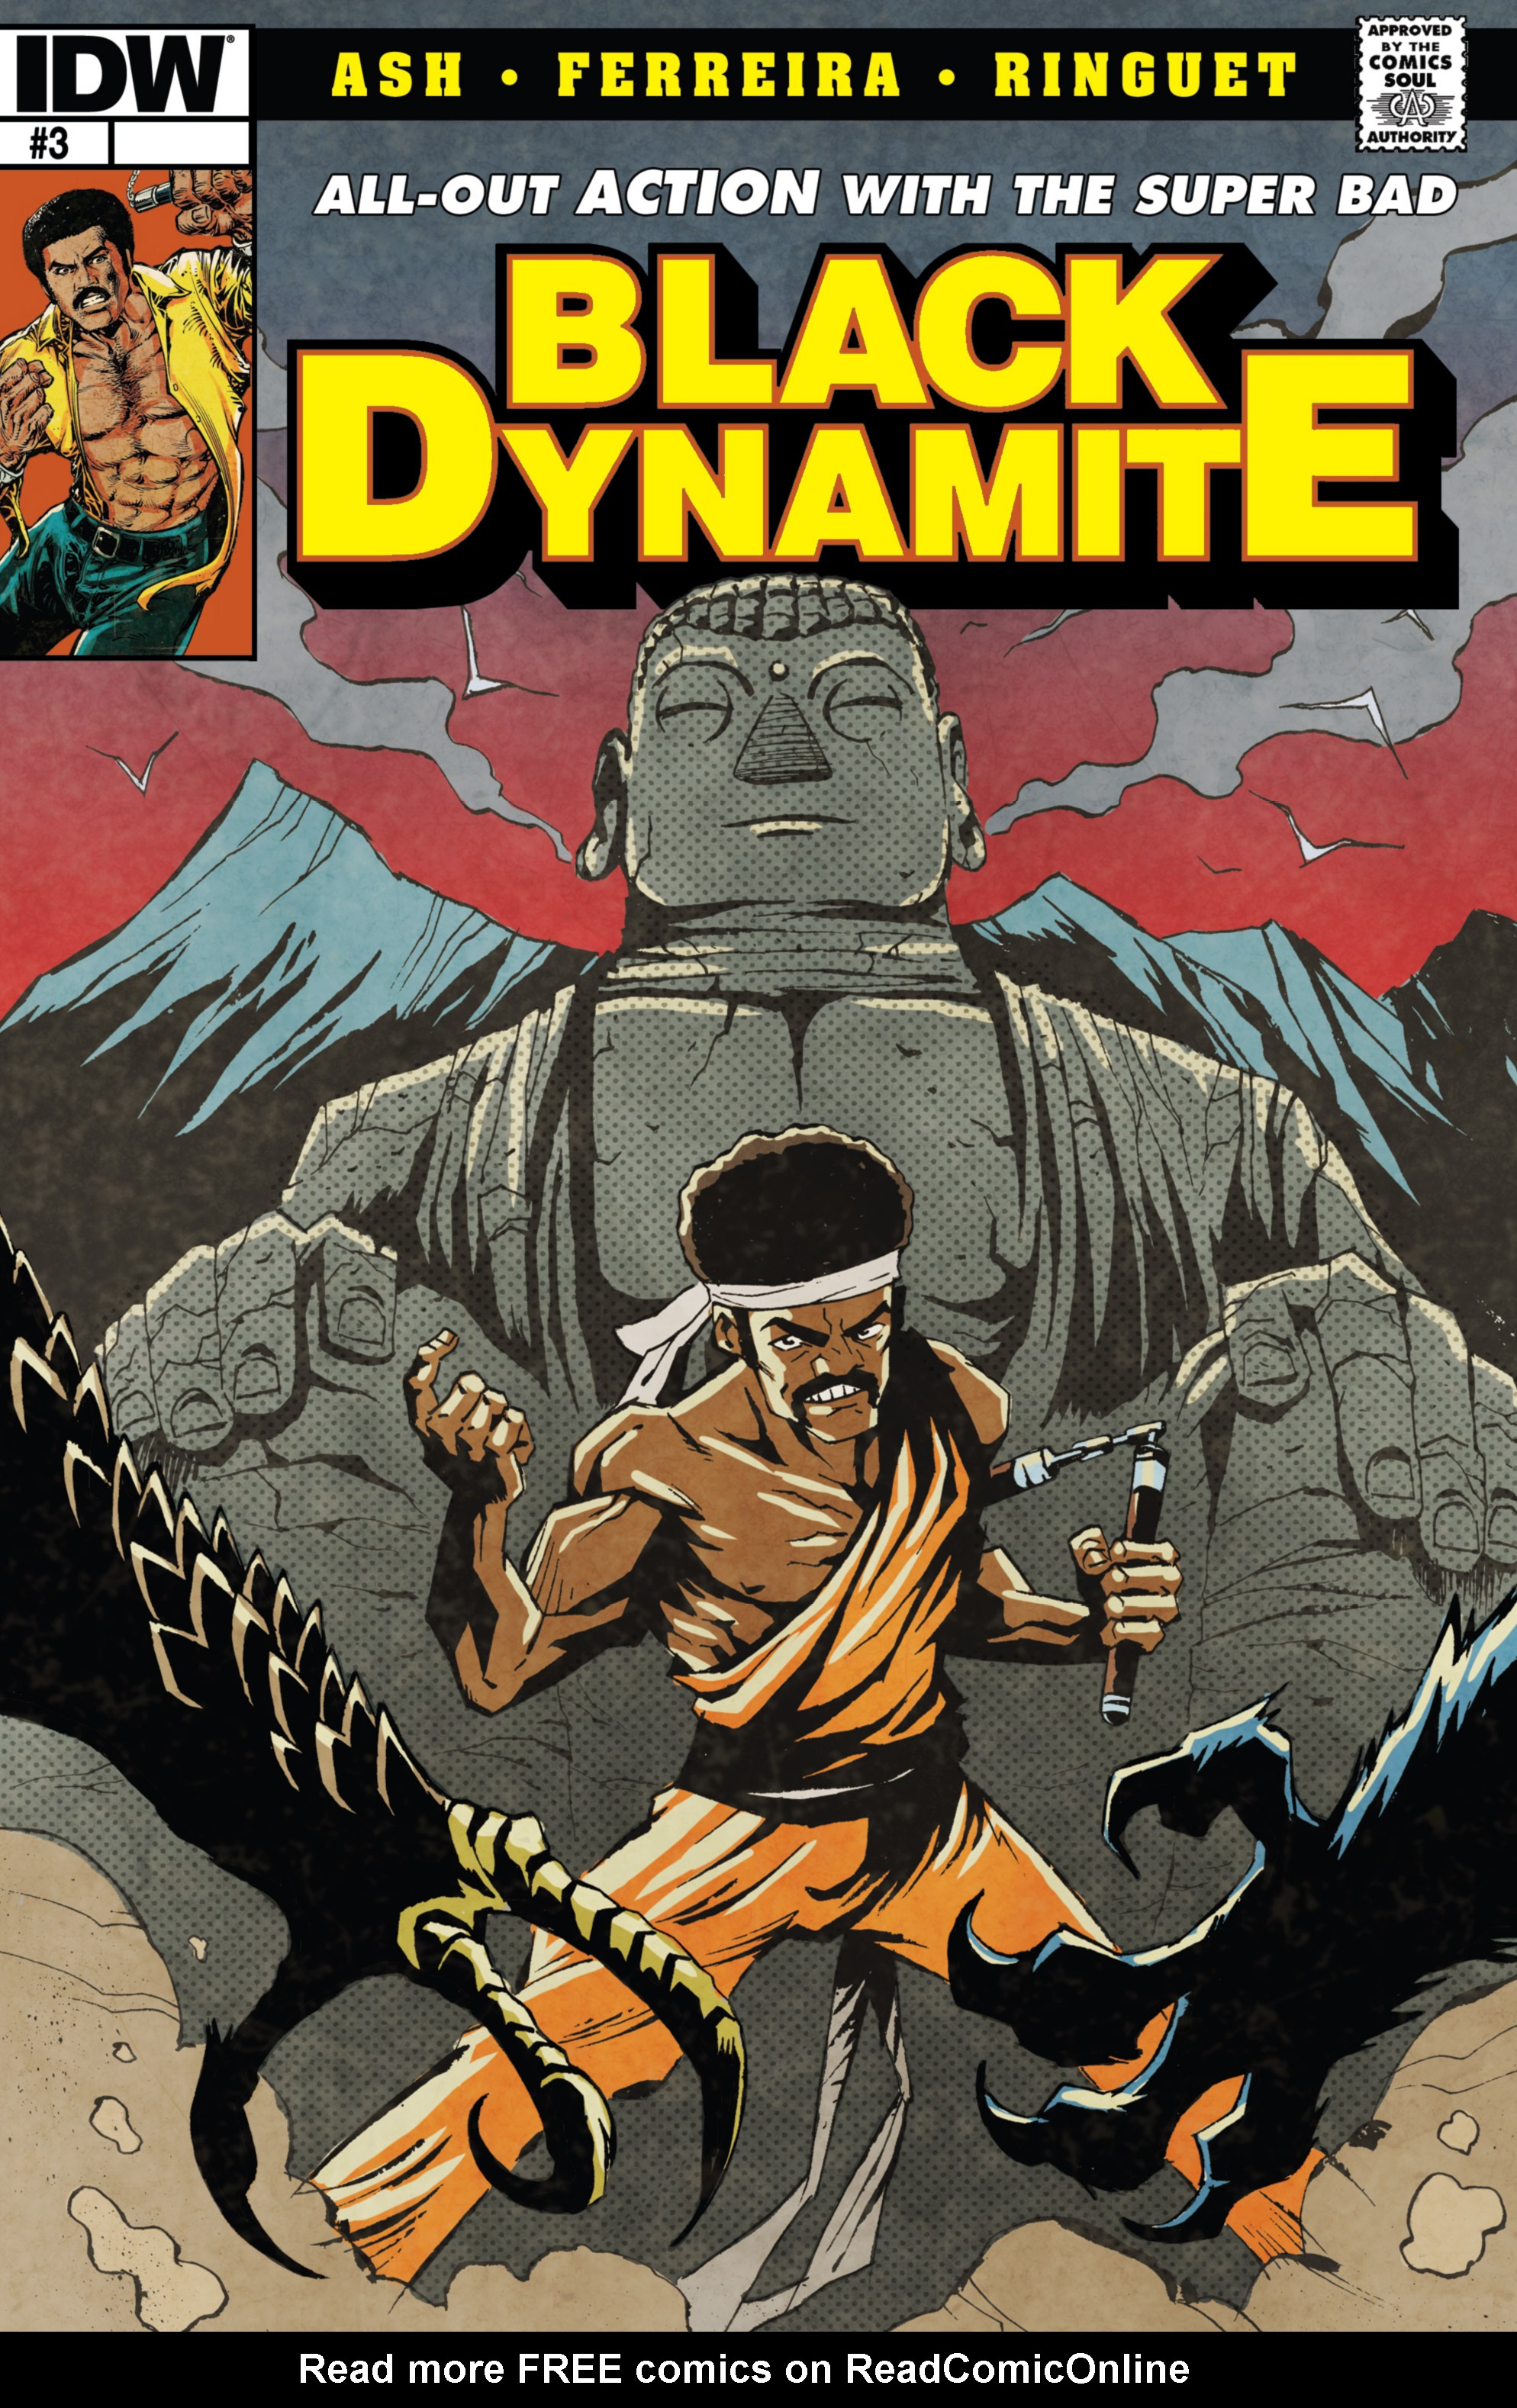 Black Dynamite Nude - Black Dynamite Issue 3 | Read Black Dynamite Issue 3 comic online in high  quality. Read Full Comic online for free - Read comics online in high  quality .